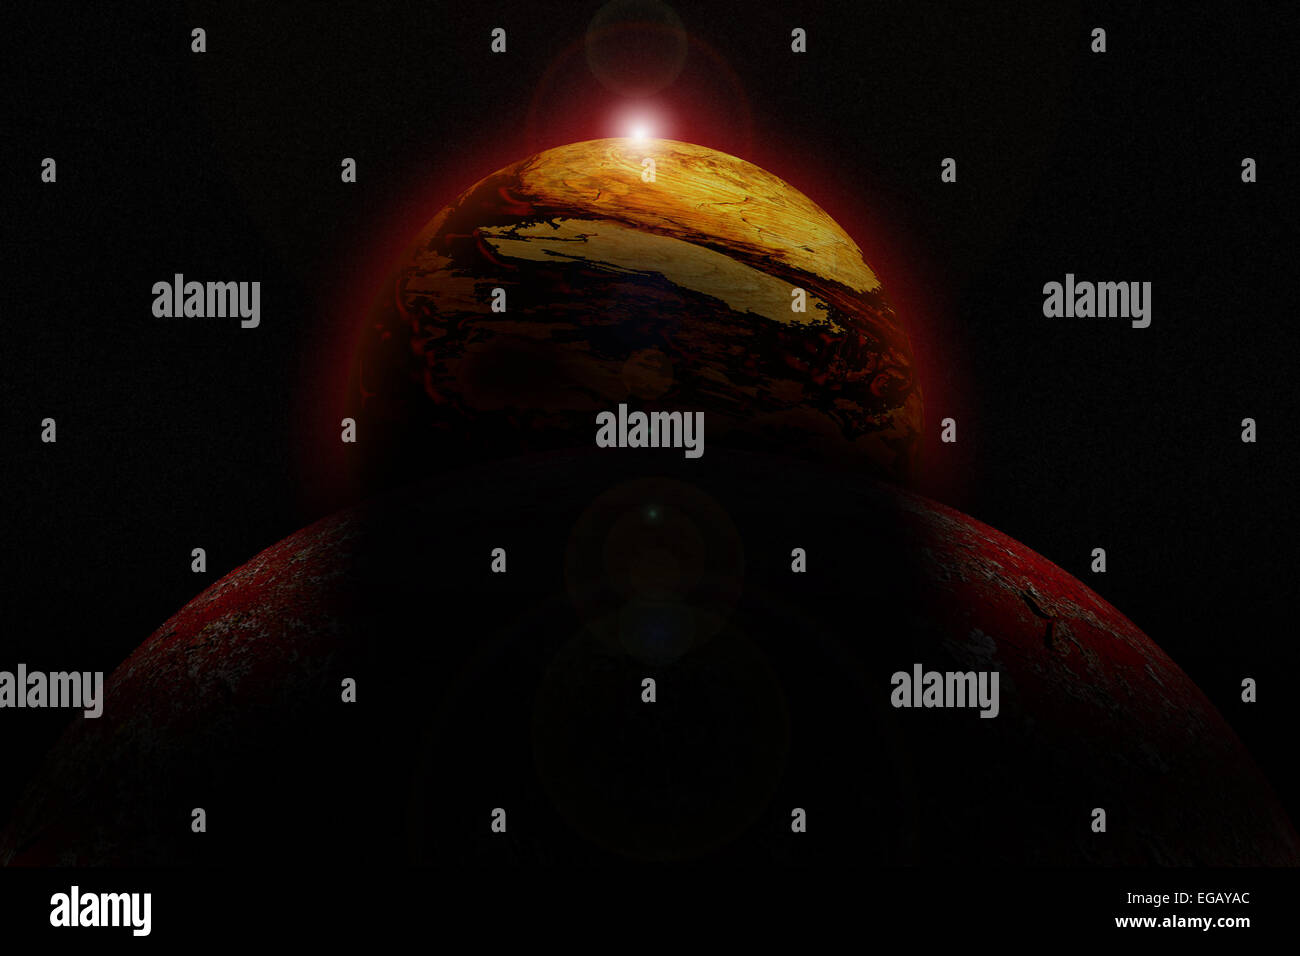 Abbildung von einem fremden Planeten. Stockfoto